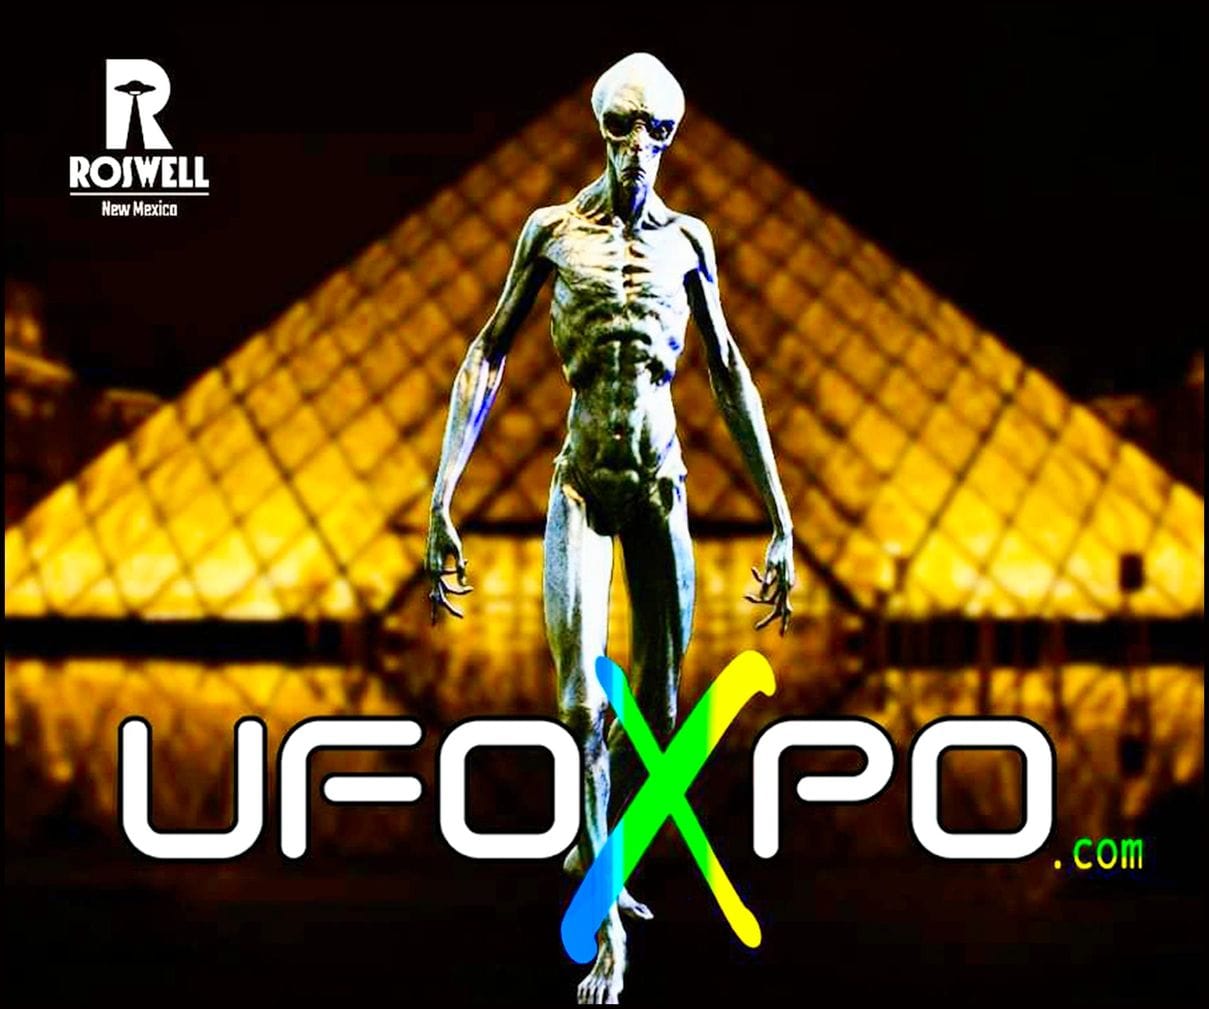 UFOXPO- Roswell's All-Inclusive UFO Mixer & Film Fest